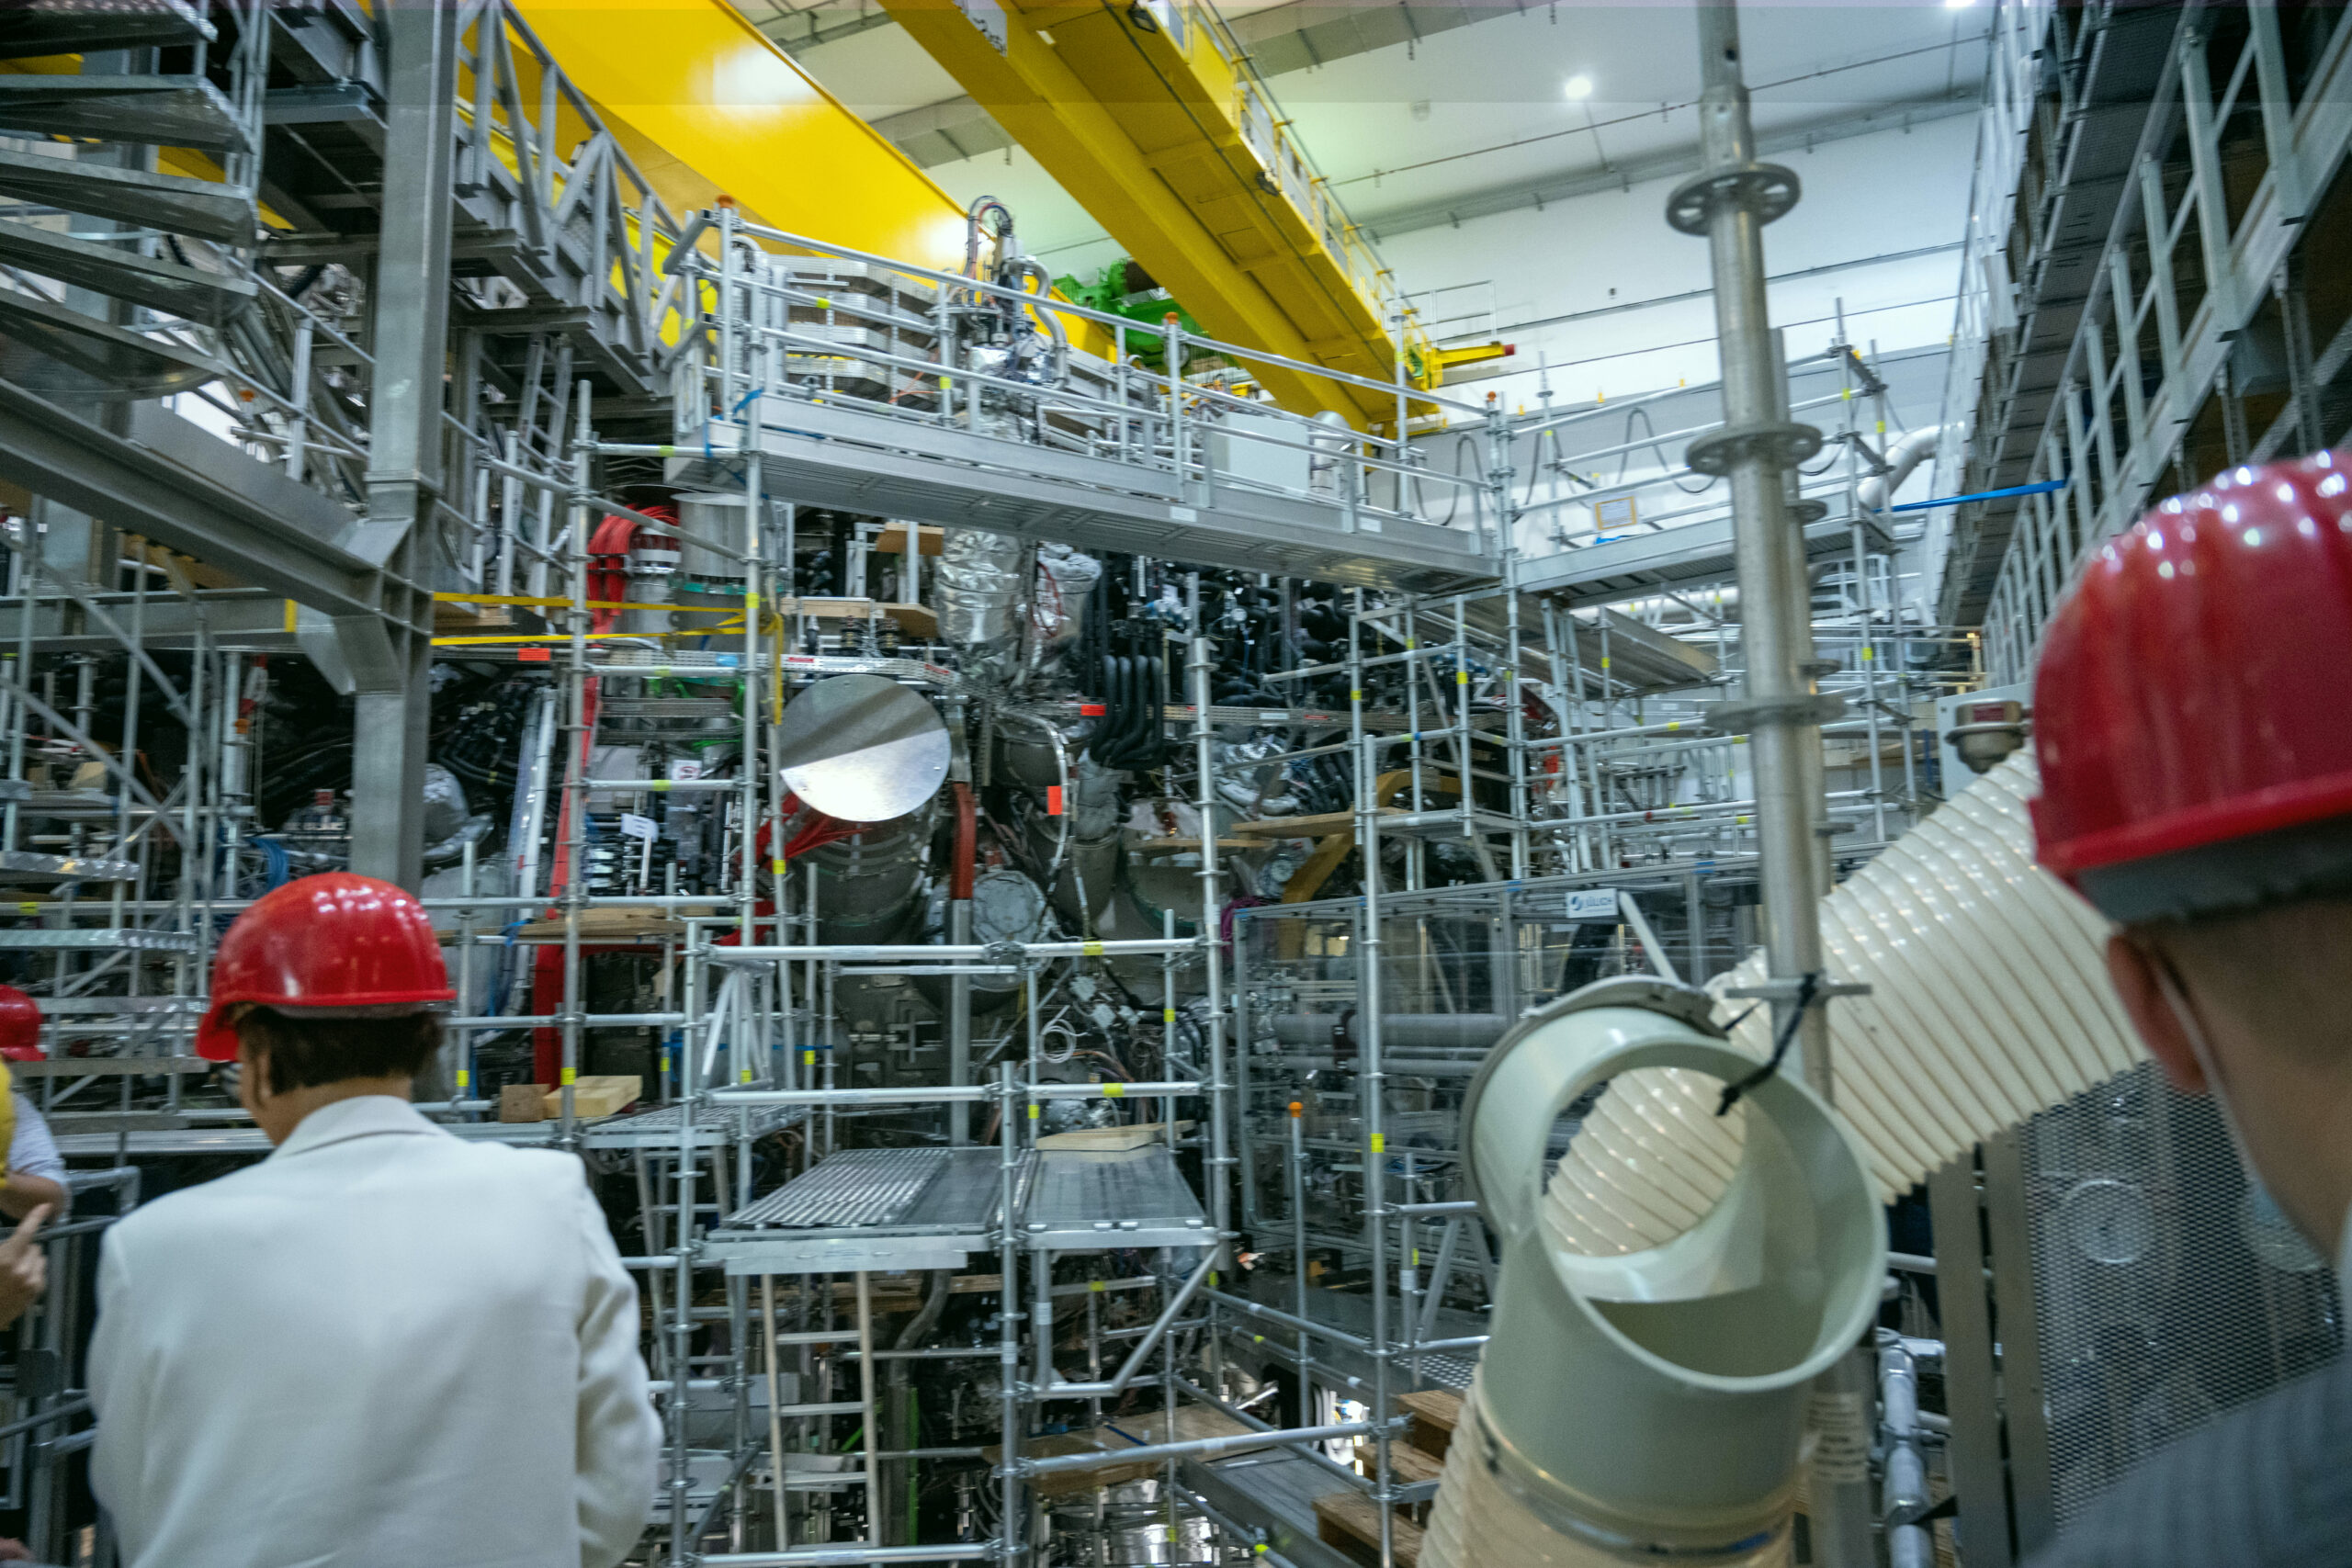 Forschung zur Kernfusion: „Deutschland schaut nur zu“